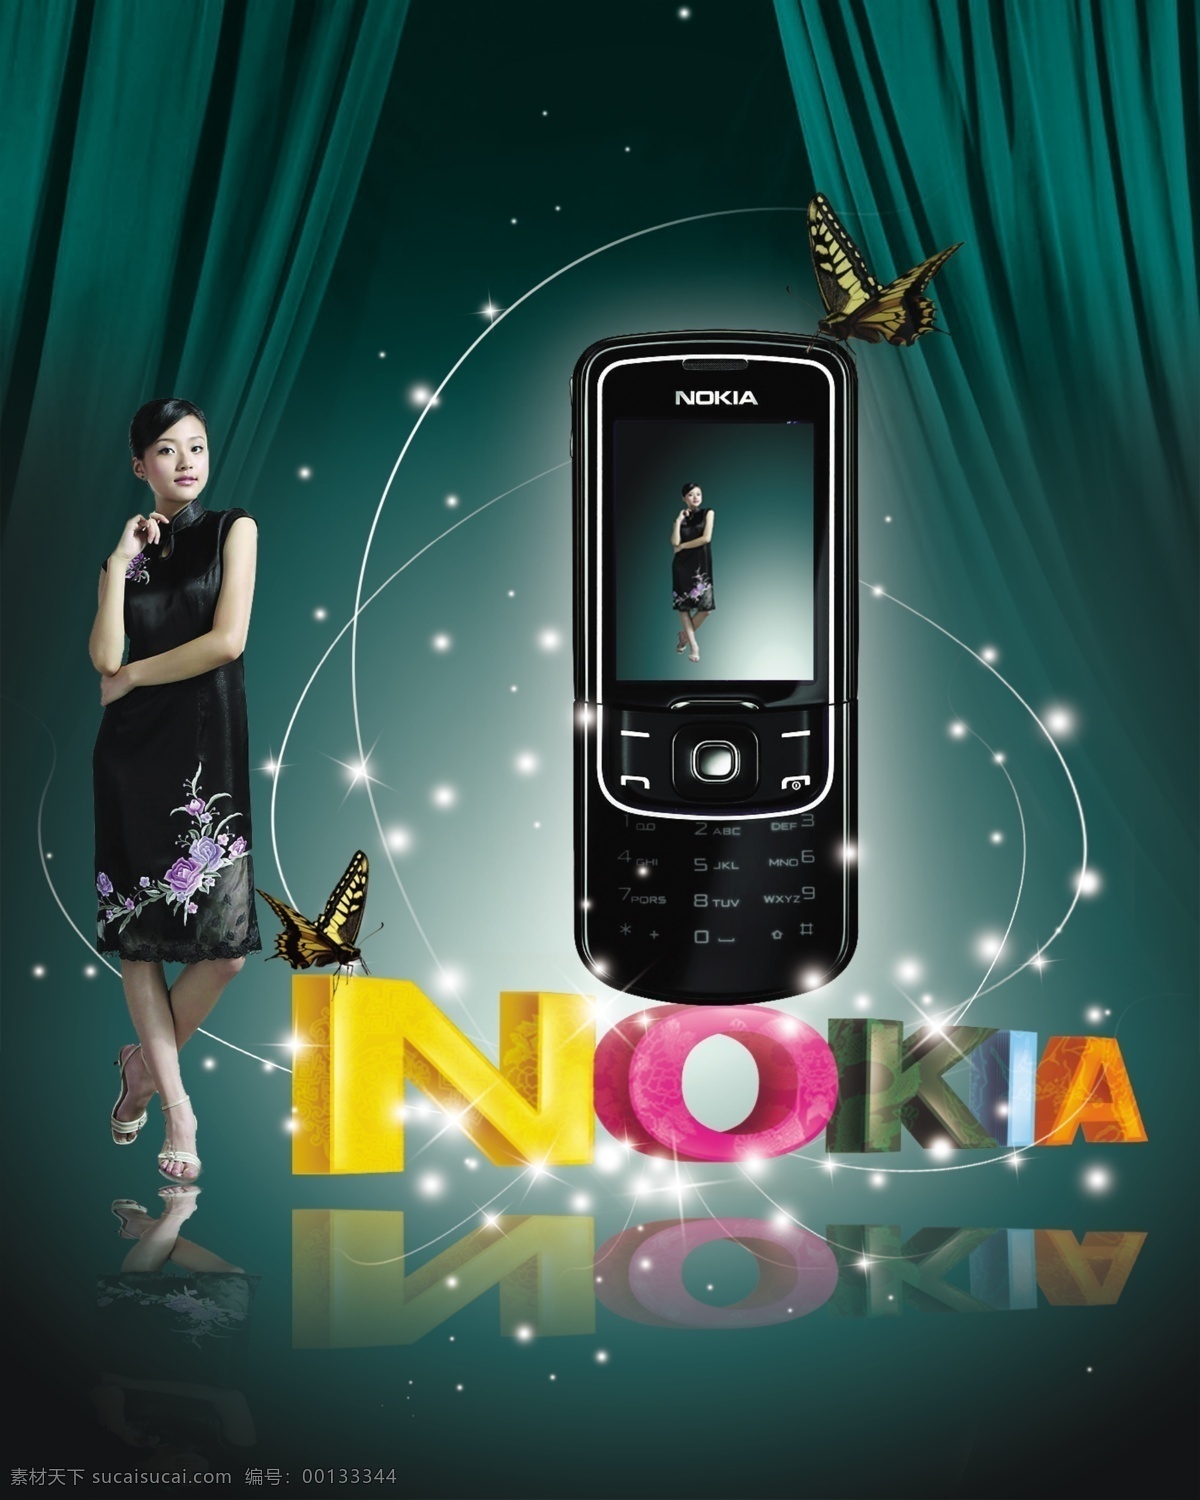 诺基亚 手机 海报 诺基亚标志 诺基亚手机 广告 手机海报背景 手机海报模板 手机海报设计 海报背景图